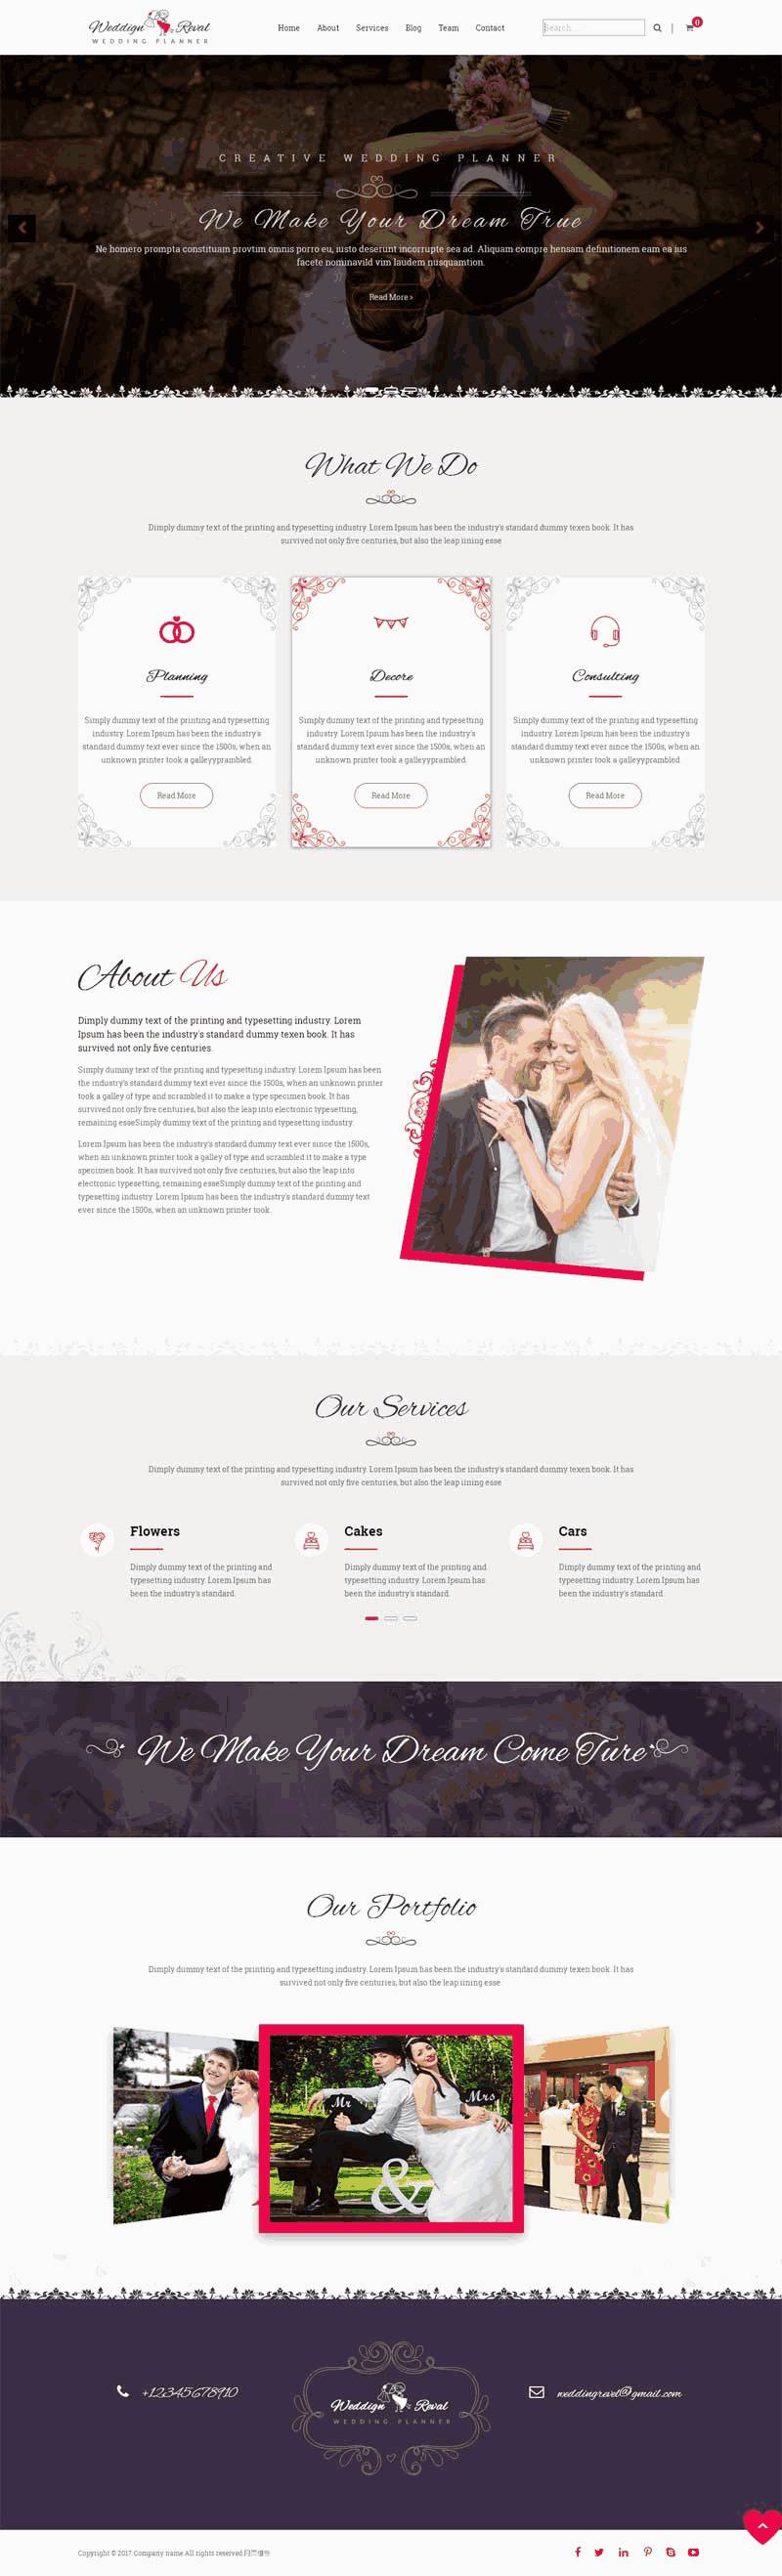 简洁欧美风格的婚庆摄影公司网站Wordpress模板（带手机版）效果图